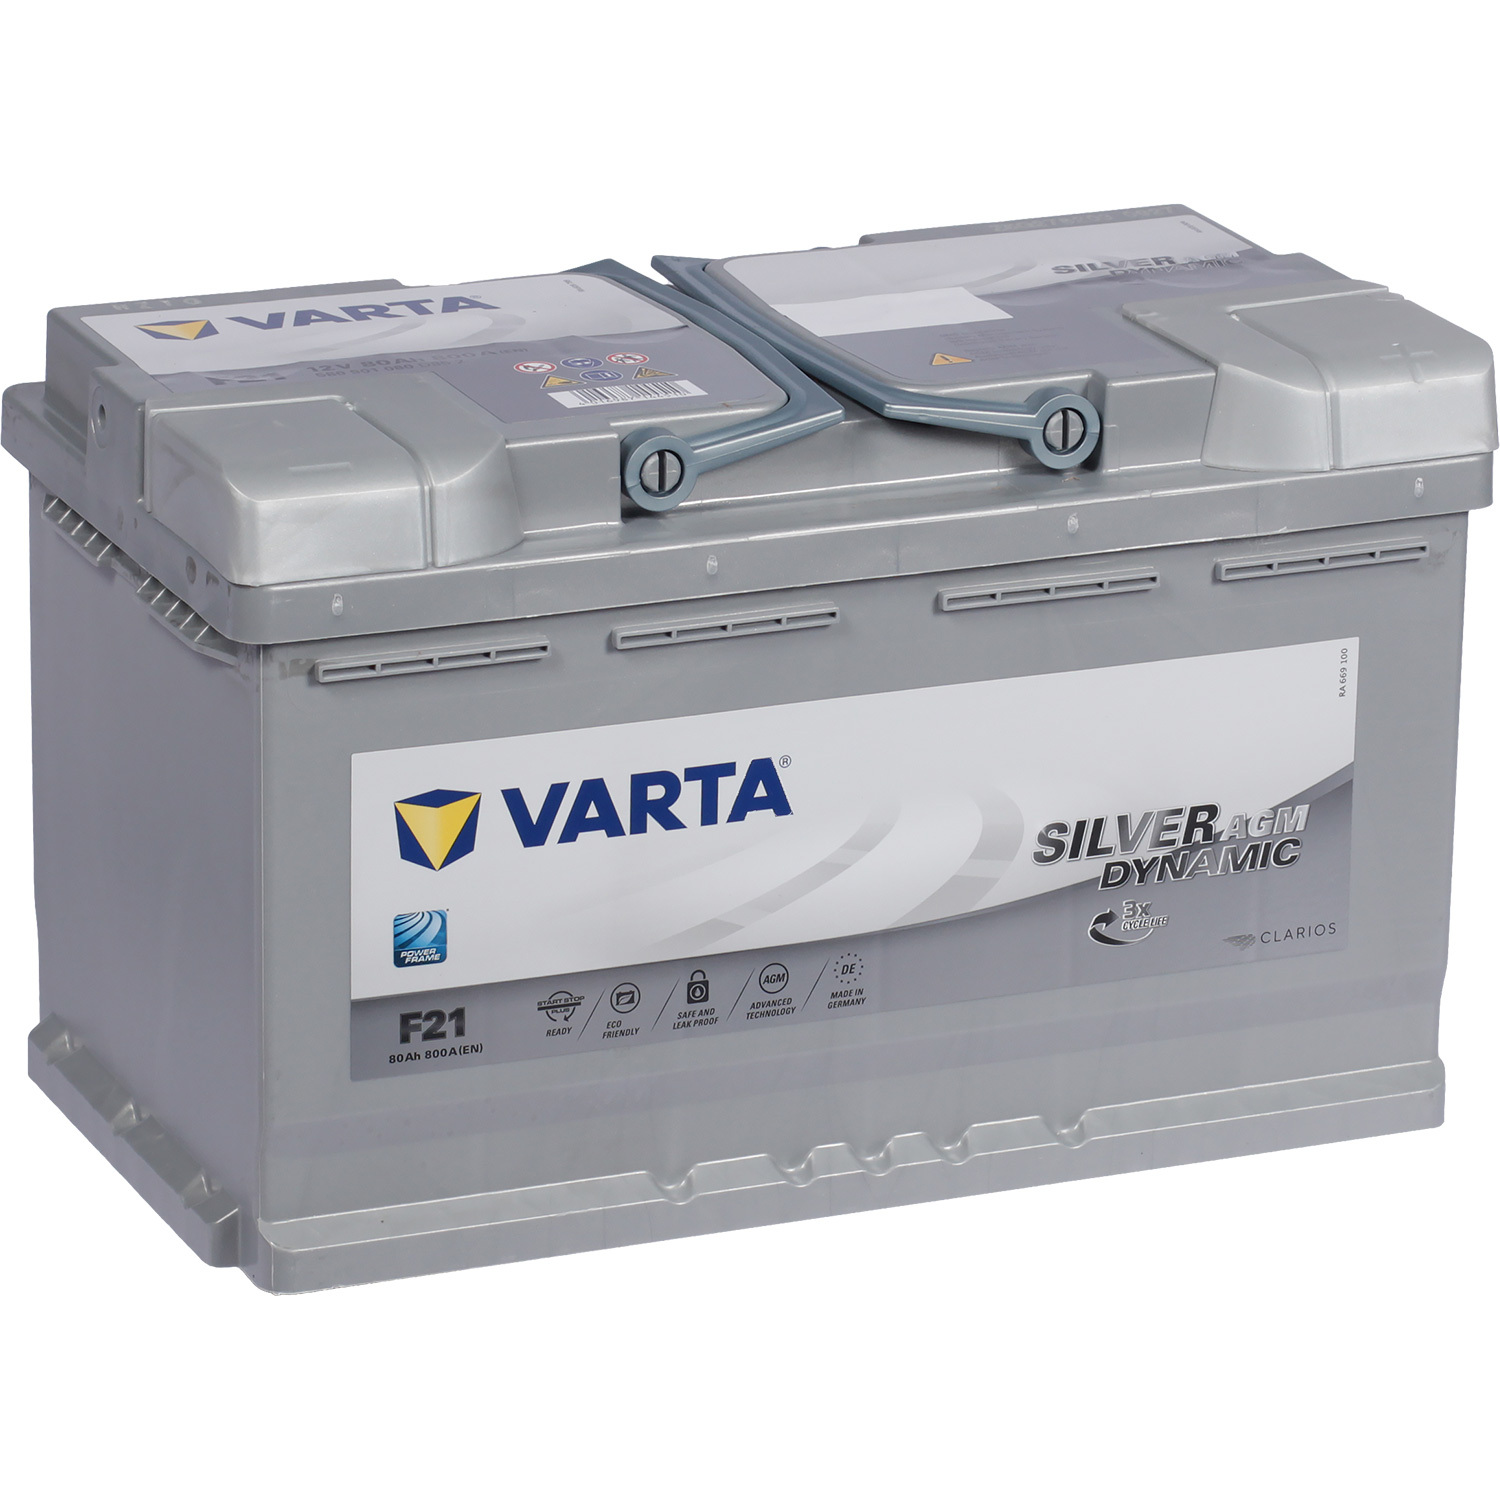 Varta Автомобильный аккумулятор Varta AGM F21 80 Ач обратная полярность L4 varta автомобильный аккумулятор varta 45 ач обратная полярность b24l